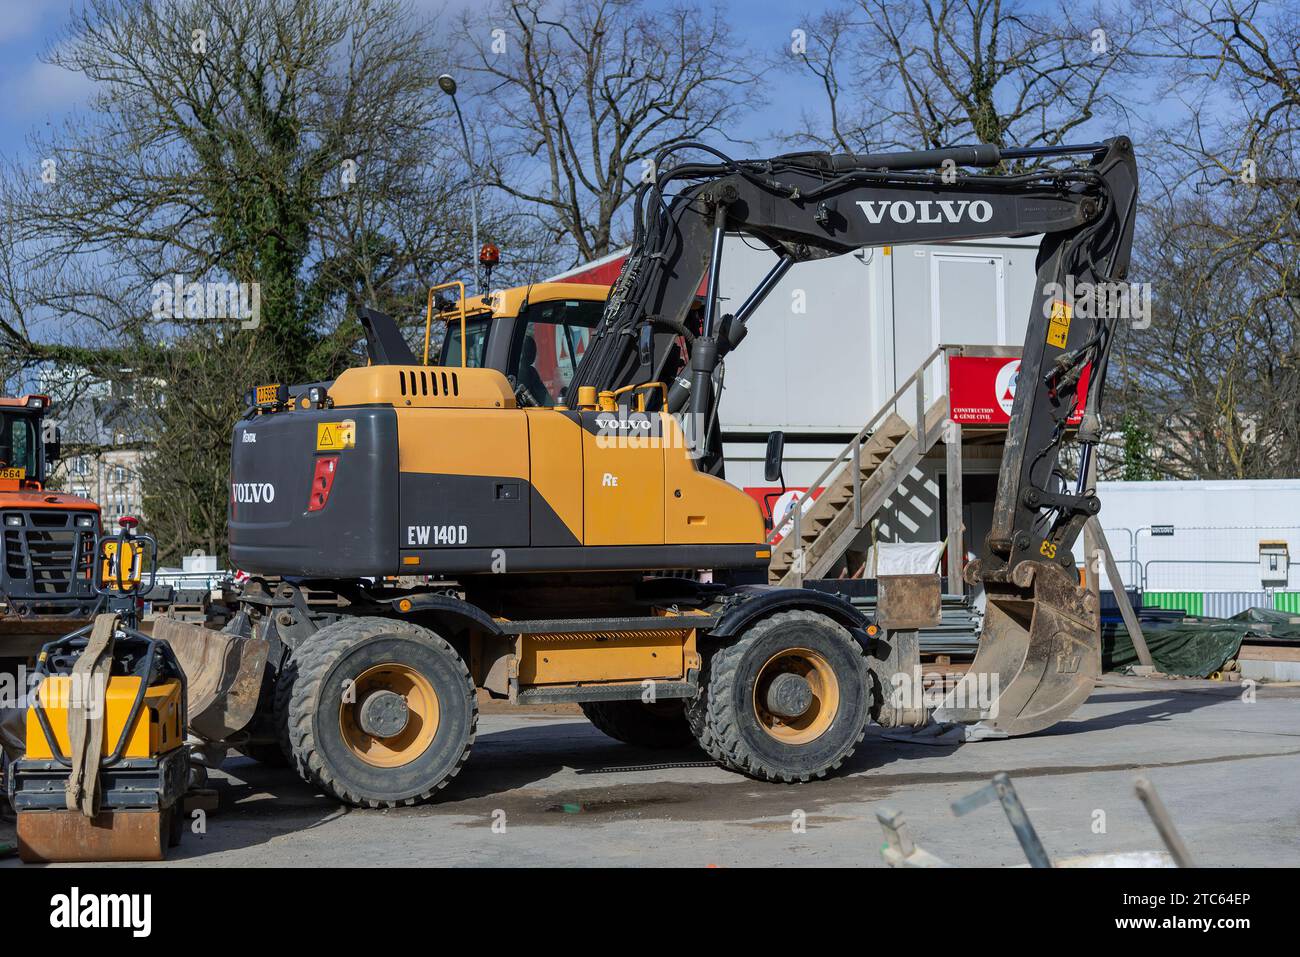 Luxembourg ville, Luxembourg - Pelle sur pneus Volvo EW 140D jaune et gris foncé sur chantier. Banque D'Images